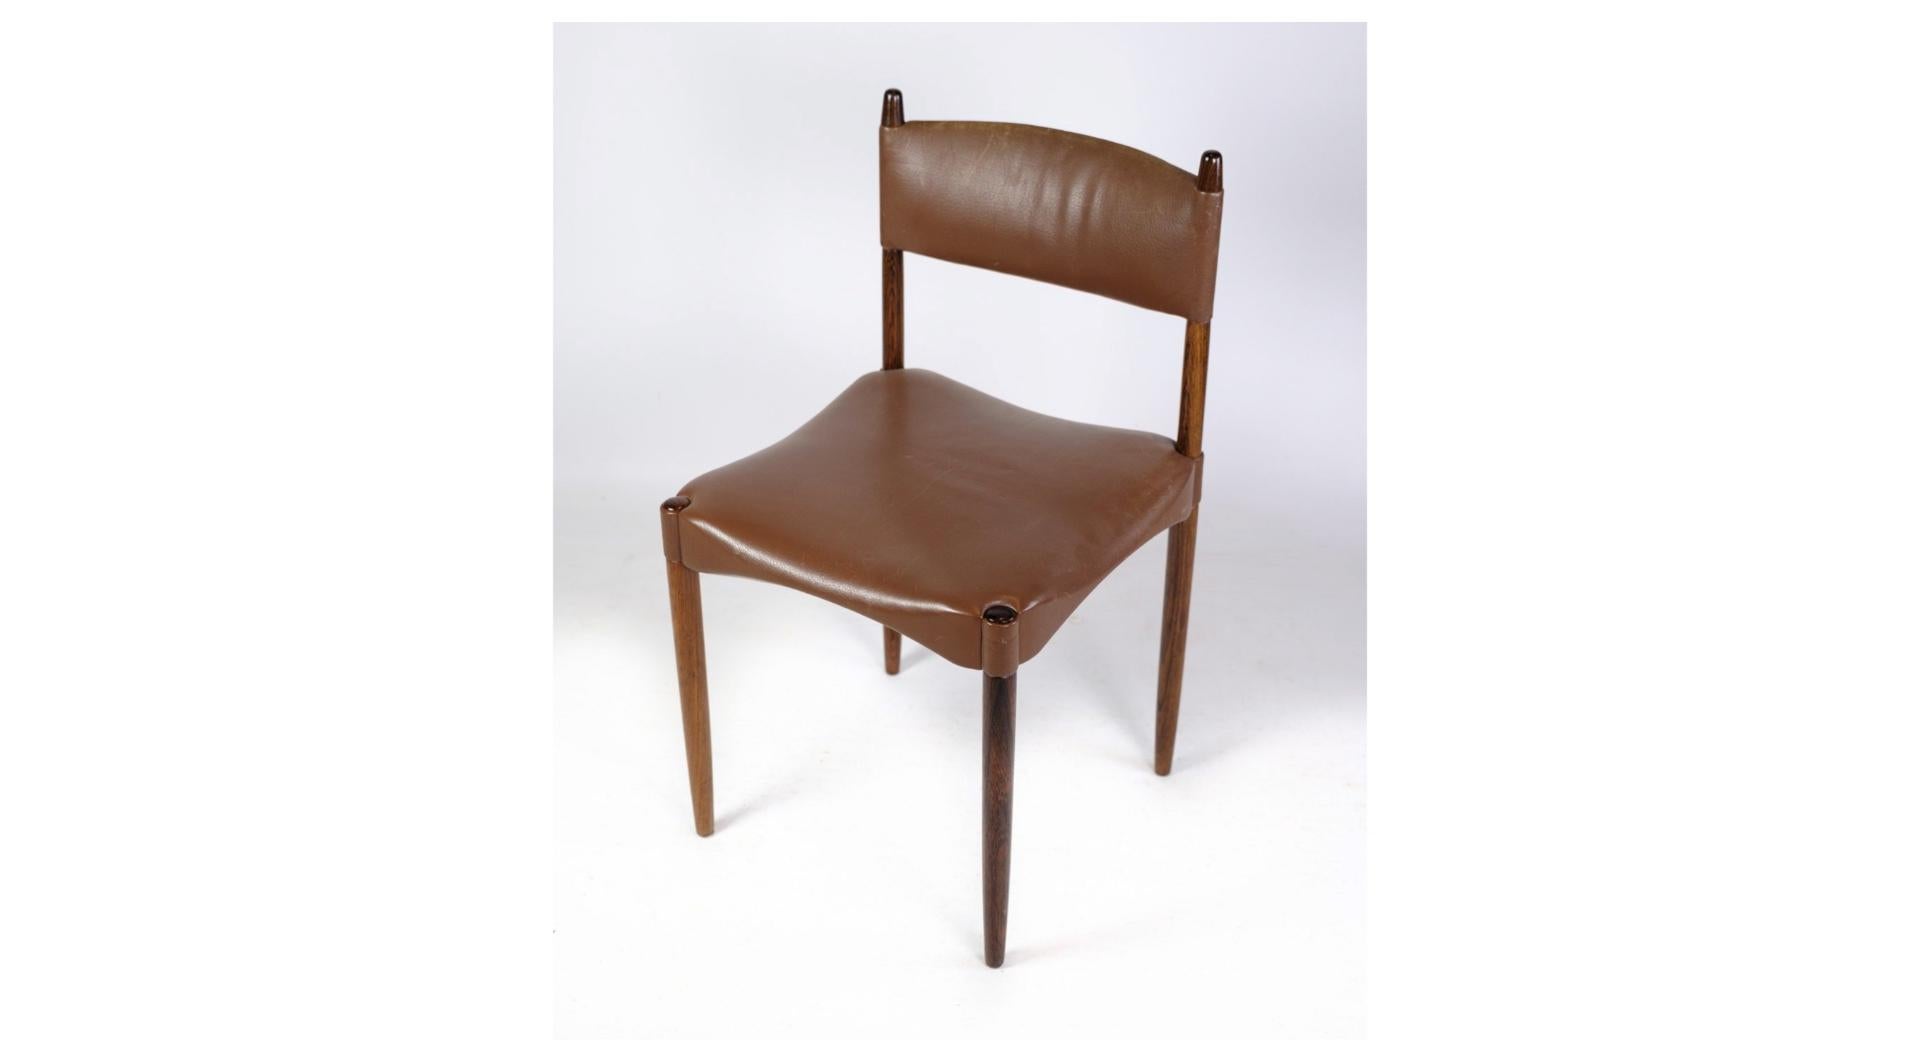 Cet ensemble de six chaises, fabriquées en bois de rose massif et revêtues d'un riche cuir brun, incarne l'élégance et le savoir-faire du design danois du milieu du siècle.

Les chaises présentent une silhouette intemporelle aux lignes épurées et